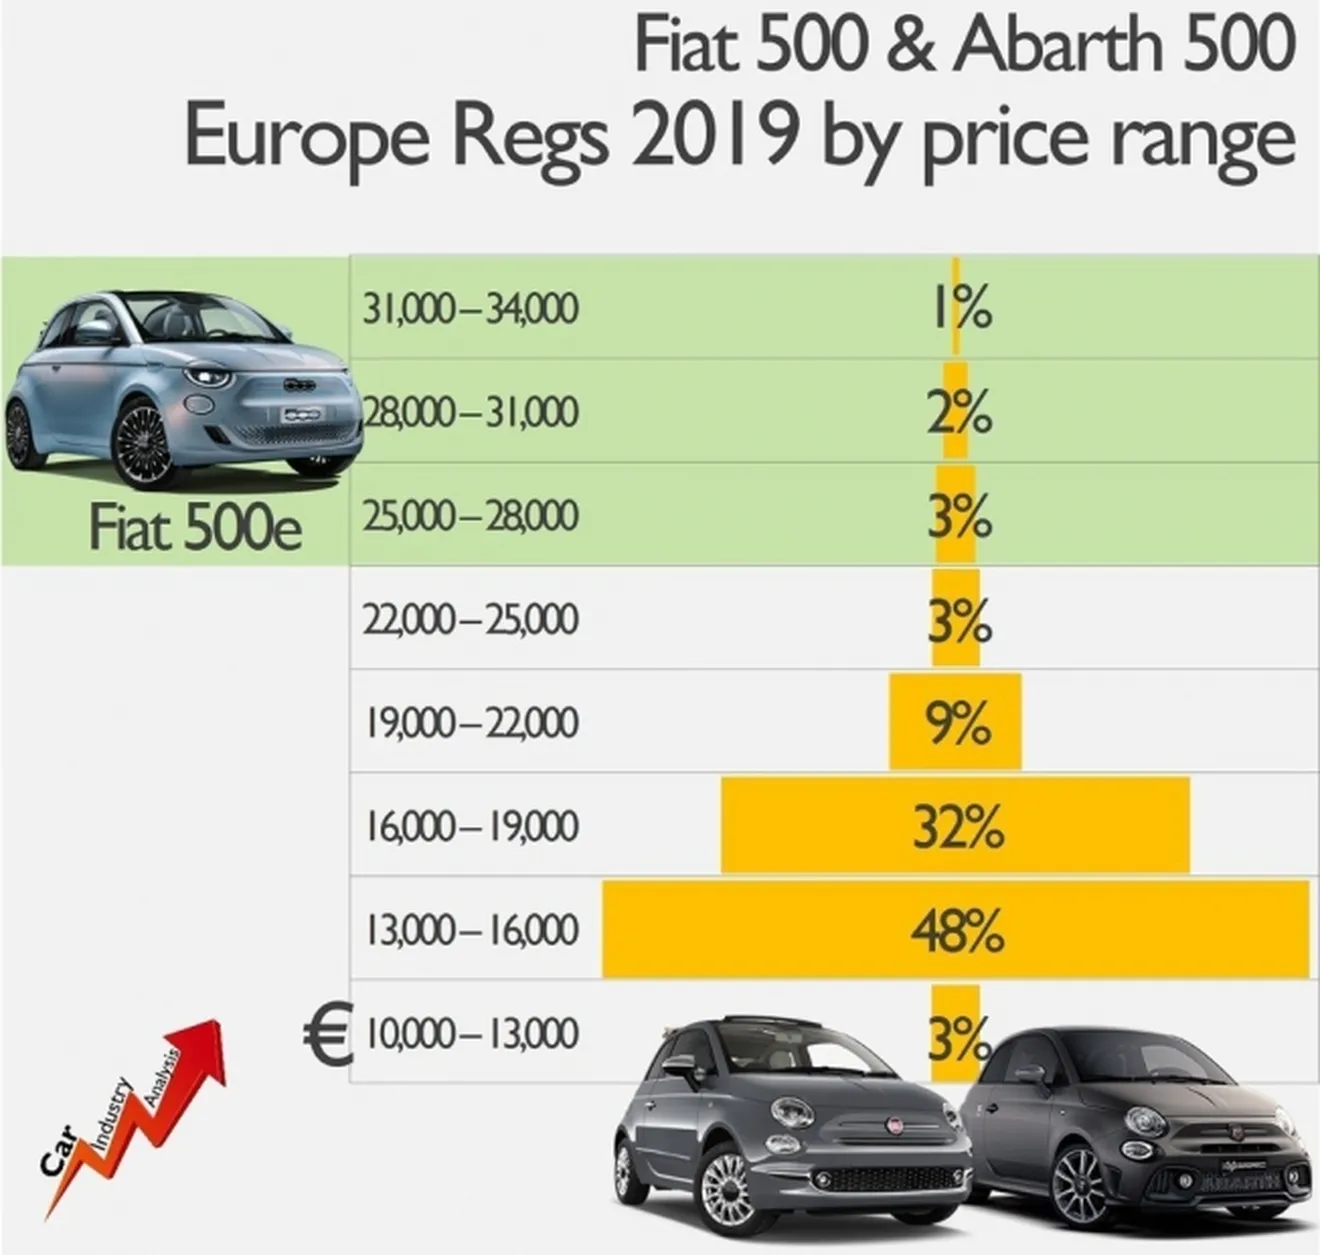 Ventas del Fiat 500 y Abarth 500 en Europa en 2019